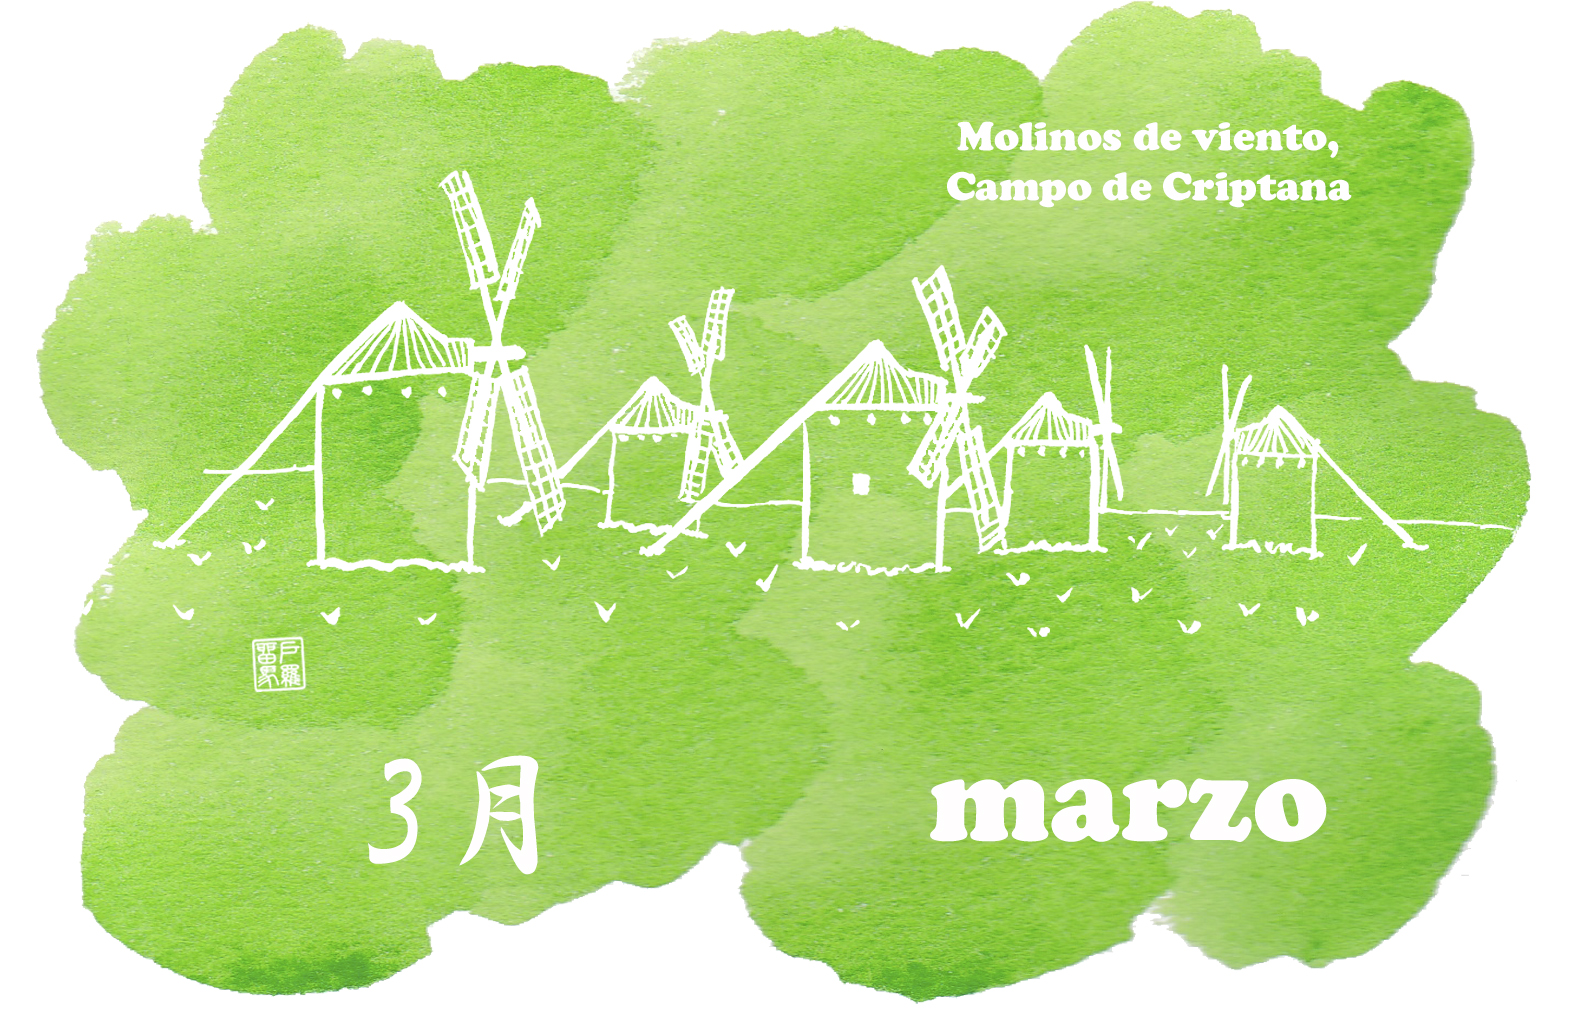 Molinos de viento de Campo de Criptana カンポ デ クリプターナの風車群